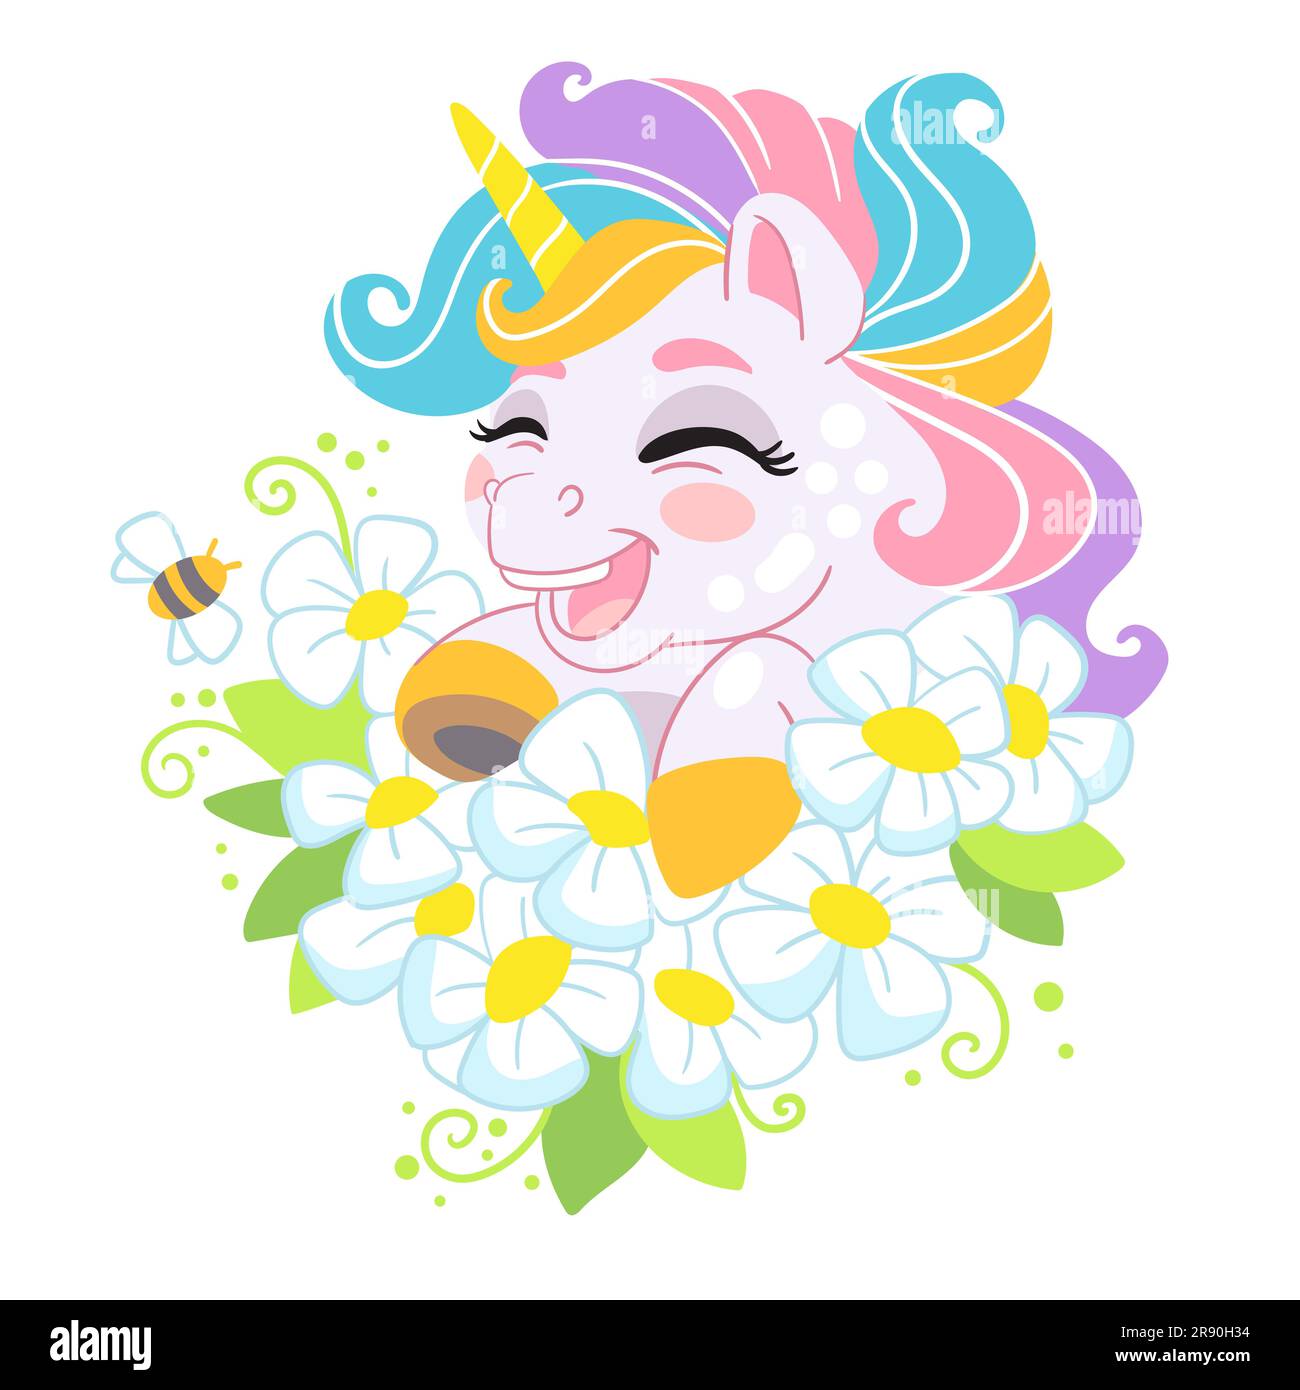 Simpatico personaggio dei cartoni animati che ride unicorno con fiori e criniera arcobaleno. Illustrazione vettoriale isolata su sfondo bianco. Per stampa, design, poster Illustrazione Vettoriale